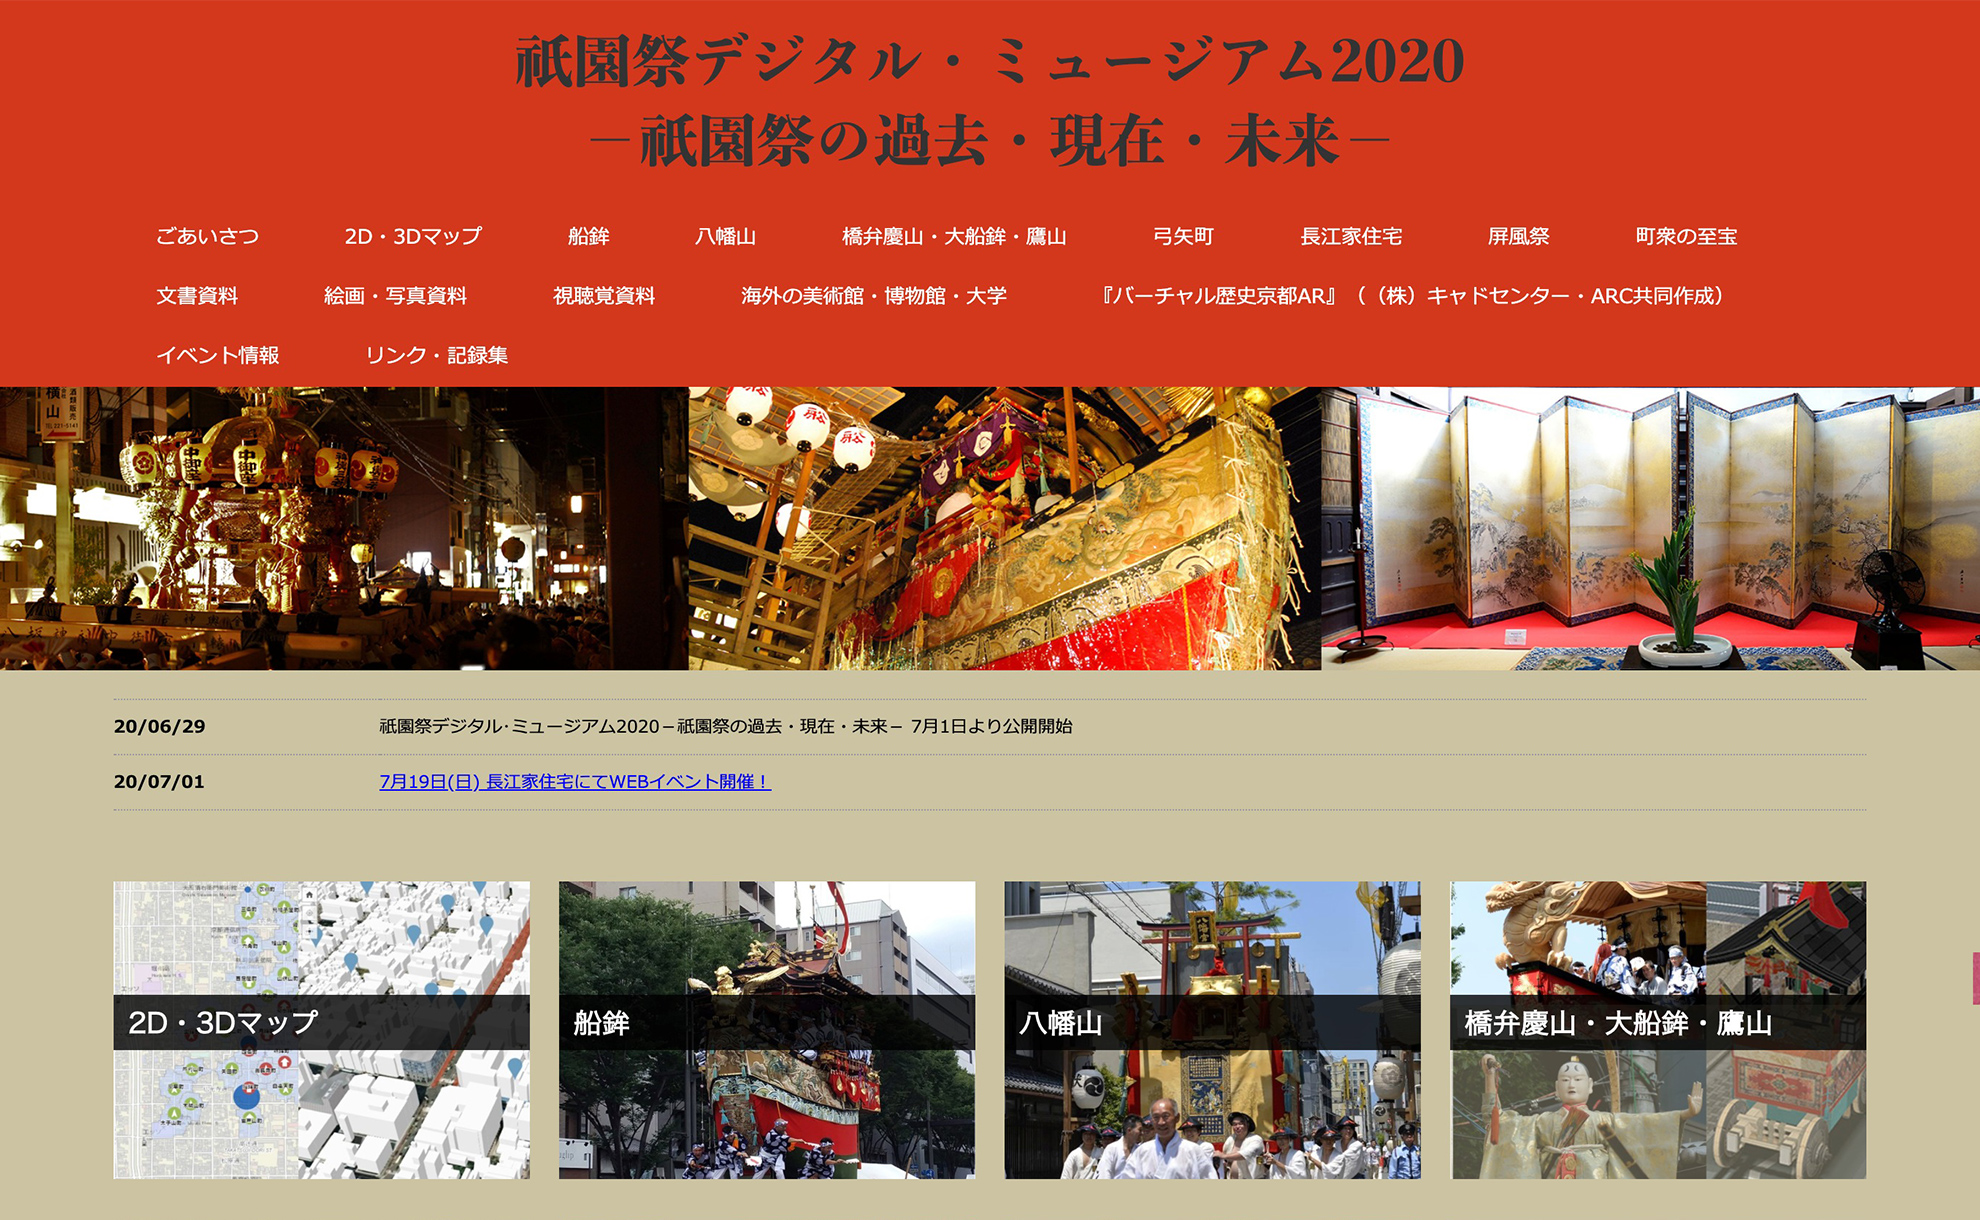 『祇園祭デジタル・ミュージアム2020』に当社制作のコンテンツを提供しました